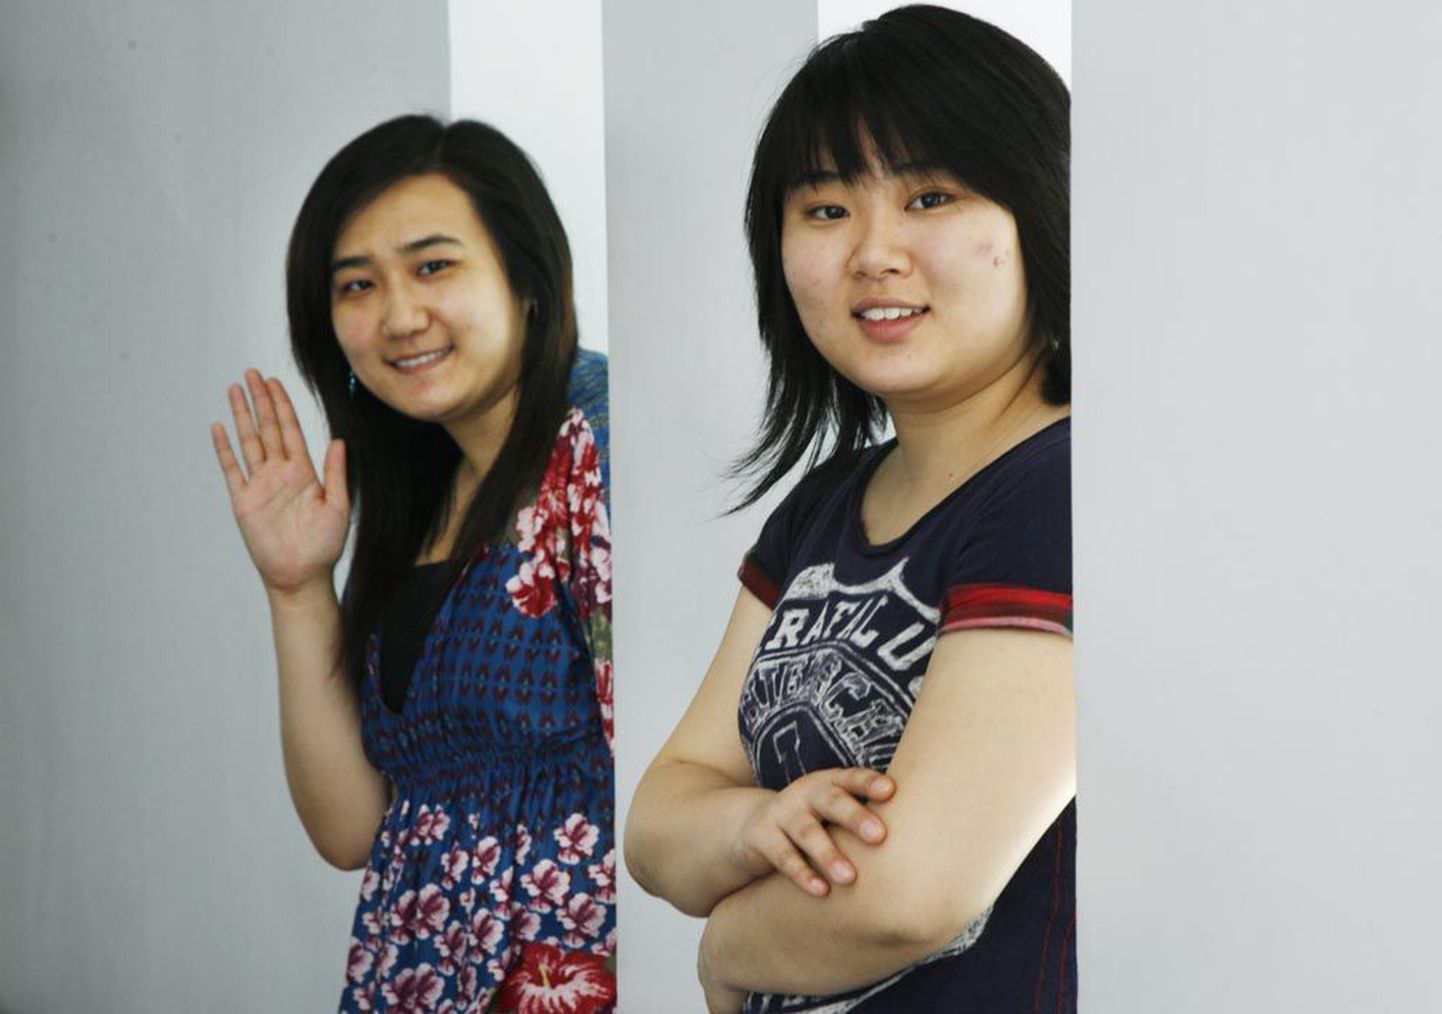 Ценг Янь (слева) и Хуан Линь стали магистрами музыкальной театральной академии. Китайские девушки, несколько лет прожившие в Эстонии, уверены, что дома им будет лучше. «Путешествовать за границей хорошо, но недолго», — считает Линь.